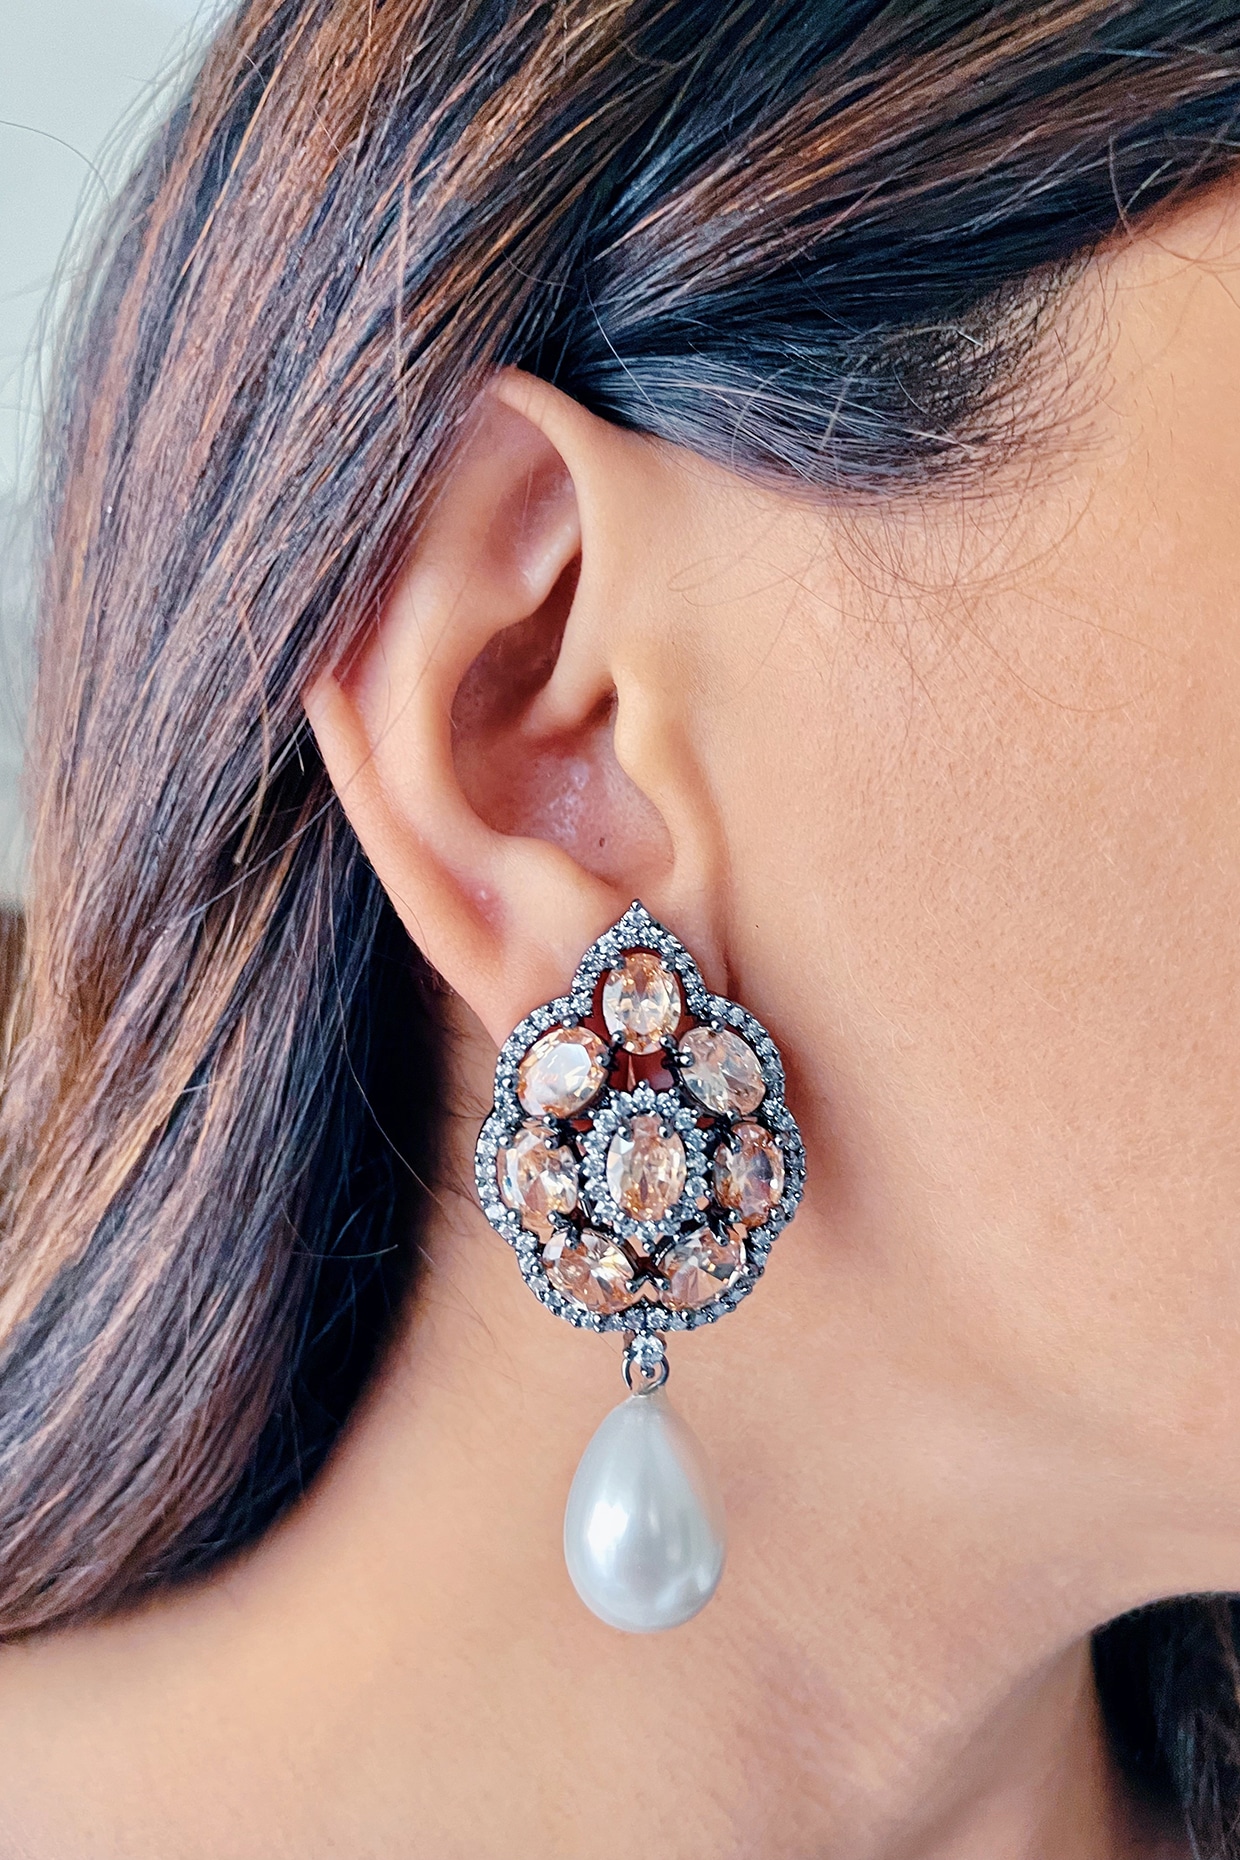 Bezel-Set Dangling Chandelier Diamond Earrings 14K Rose Gold 2.27ct - IE8